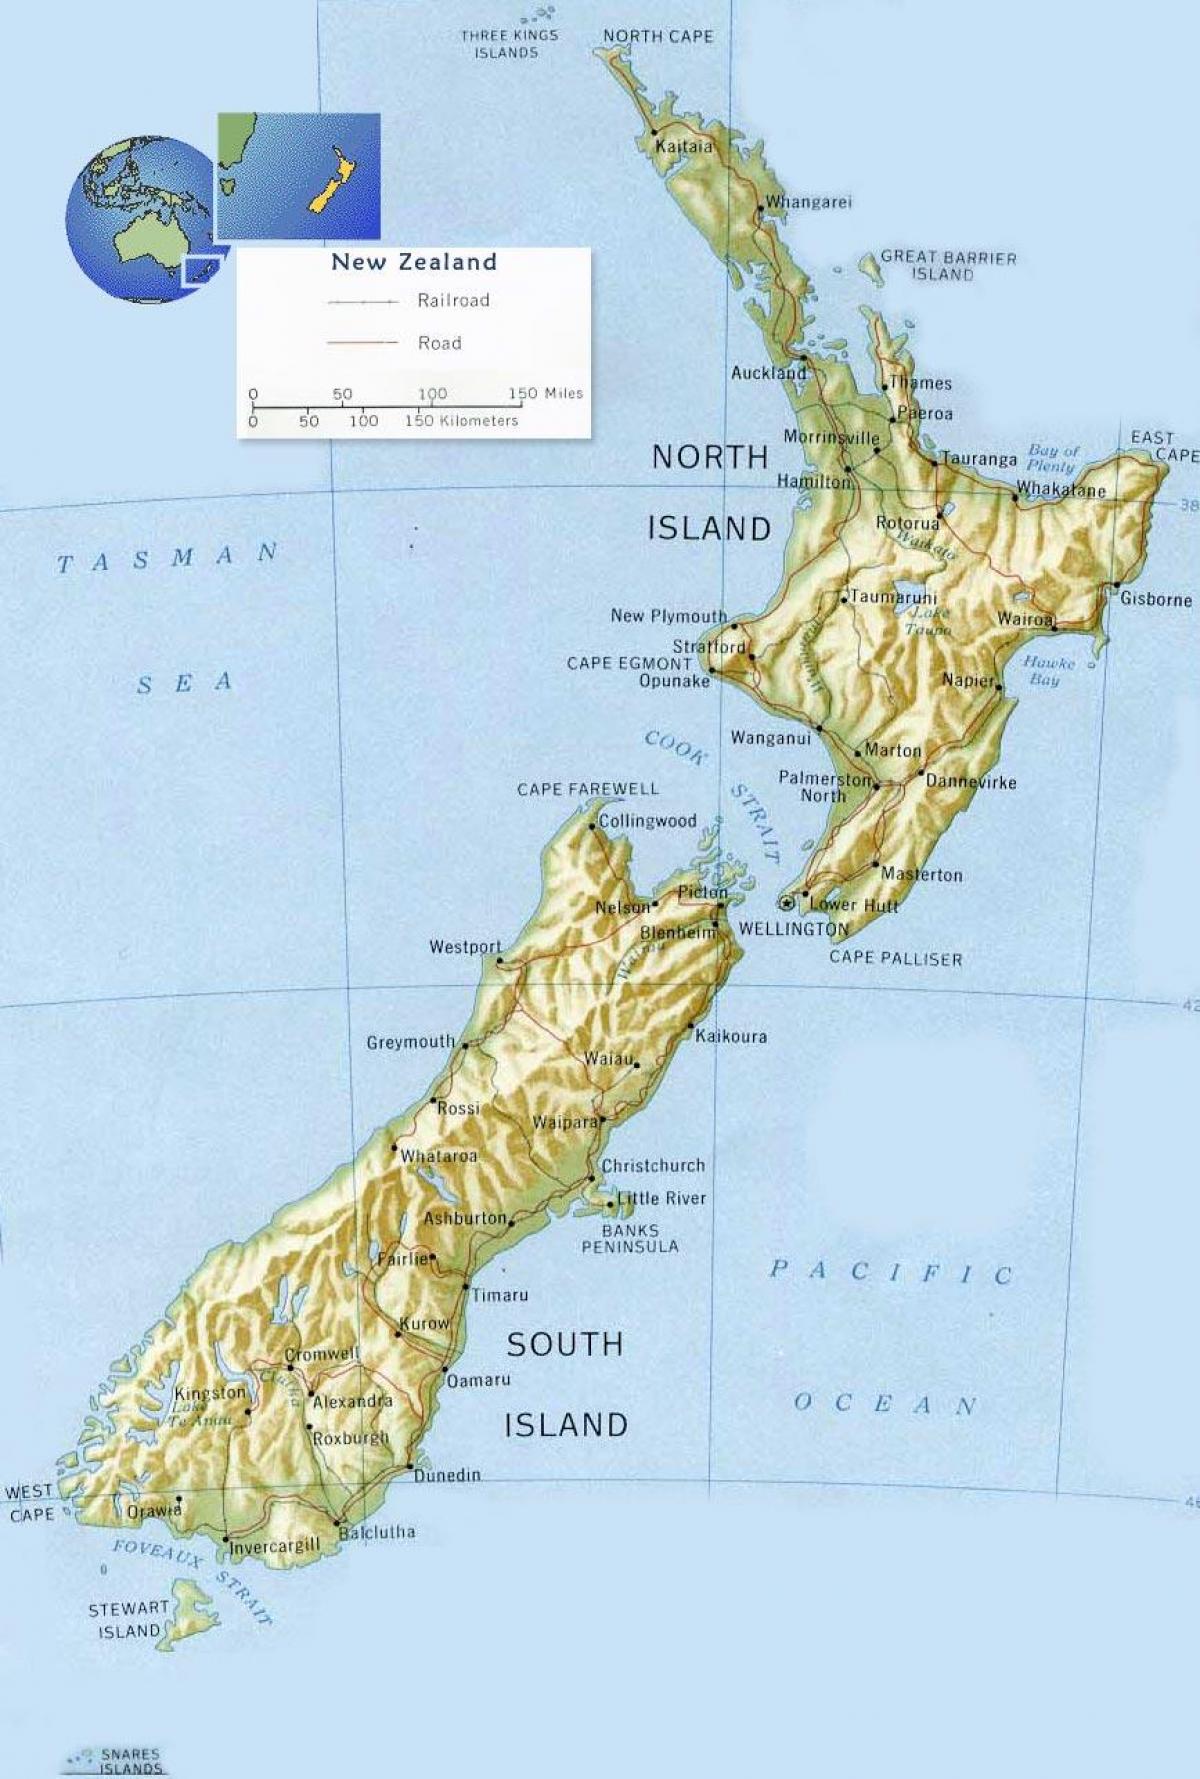 Նոր Զելանդիա վելինգտոն քարտեզի վրա